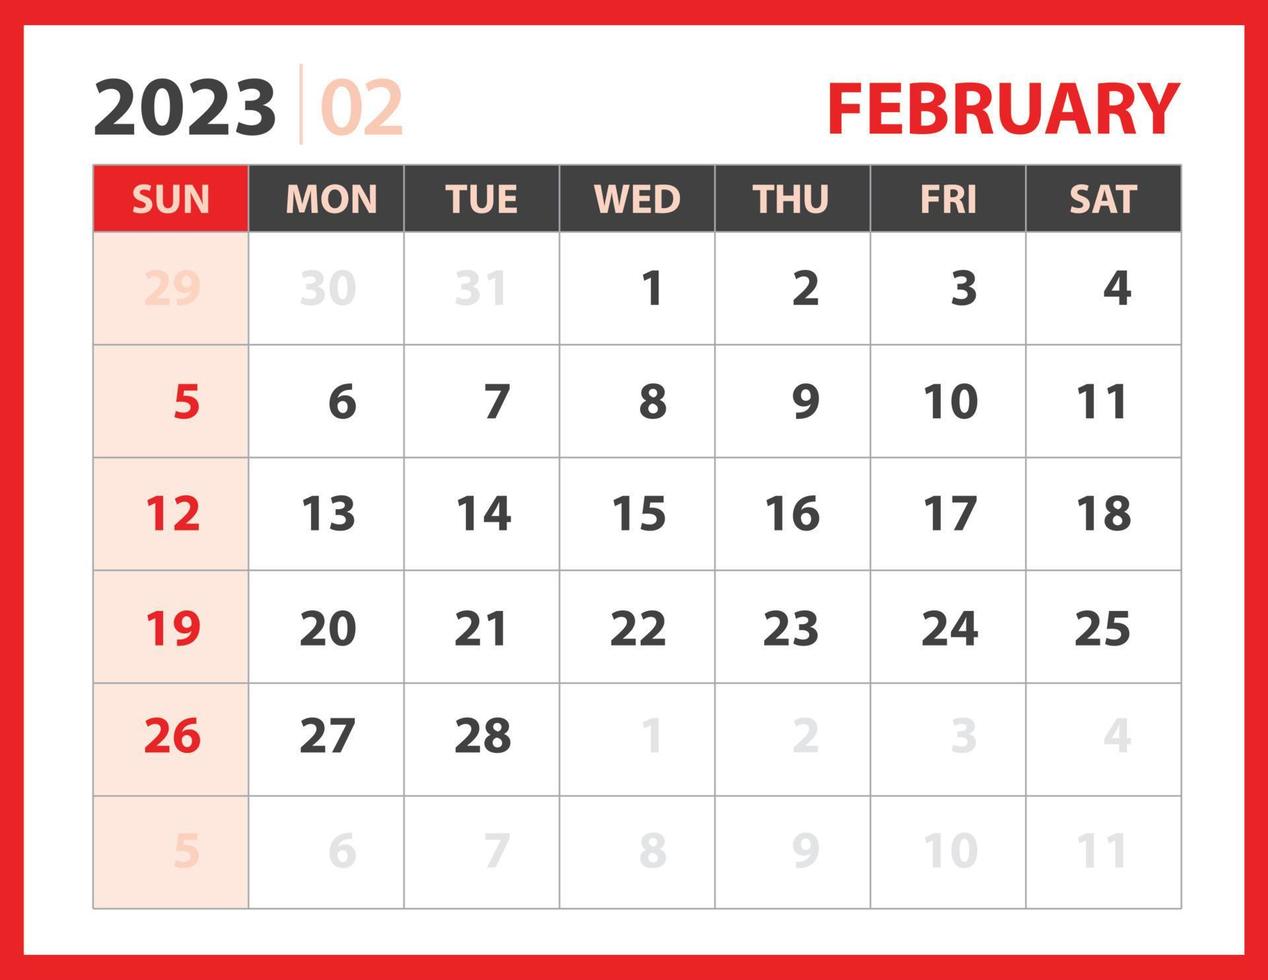 Februar 2023 Vorlage, Kalender 2023 Designvektor, Planerlayout, Woche beginnt Sonntag, Tischkalender 2023 Vorlage, Briefpapier. Wandkalender auf rotem Hintergrund, Vektor eps 10